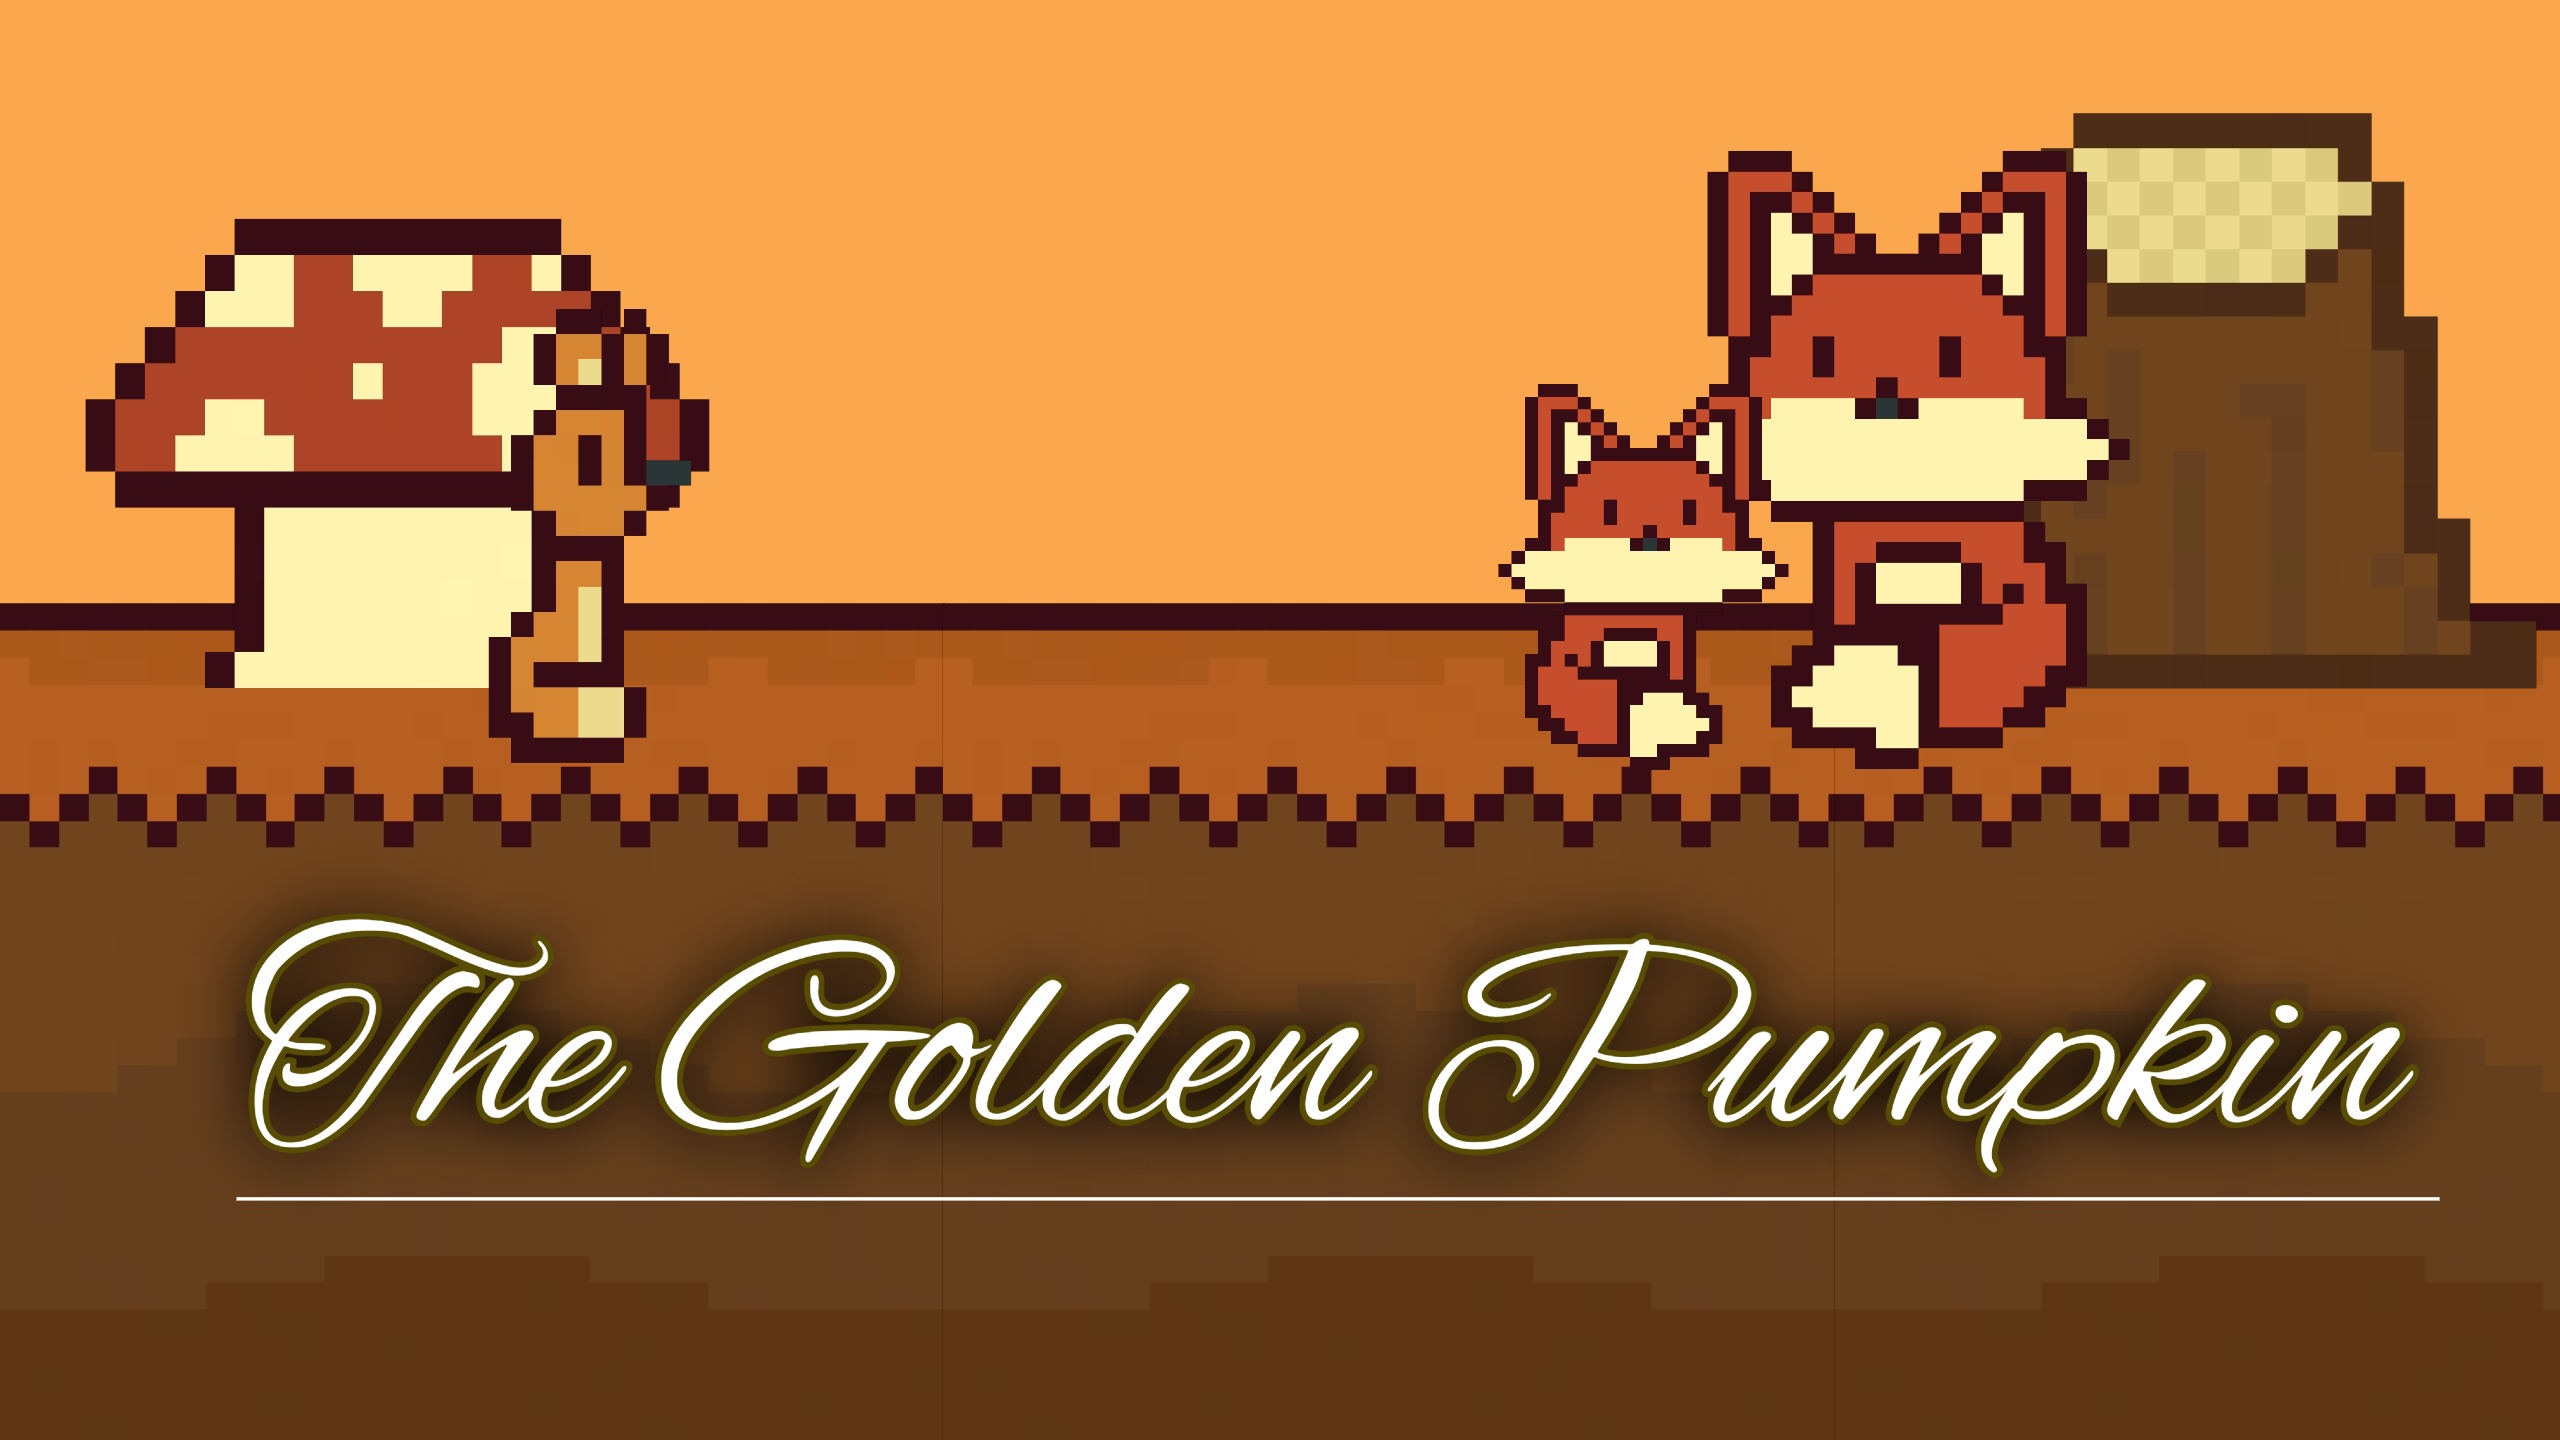 The Golden Pumpkin